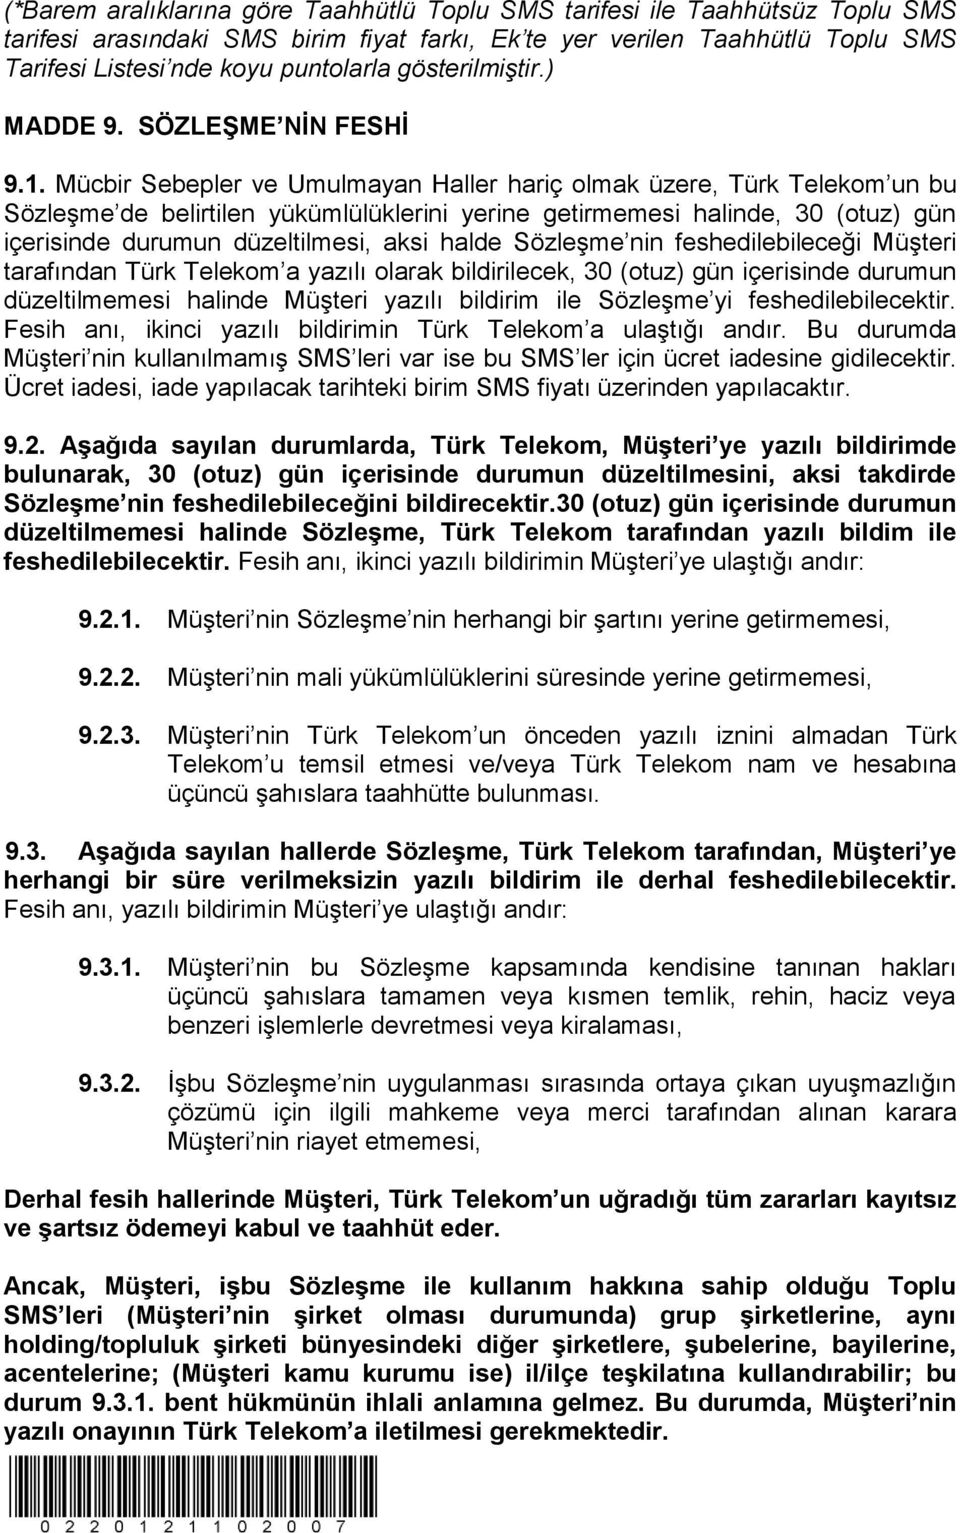 Mücbir Sebepler ve Umulmayan Haller hariç olmak üzere, Türk Telekom un bu Sözleşme de belirtilen yükümlülüklerini yerine getirmemesi halinde, 30 (otuz) gün içerisinde durumun düzeltilmesi, aksi halde